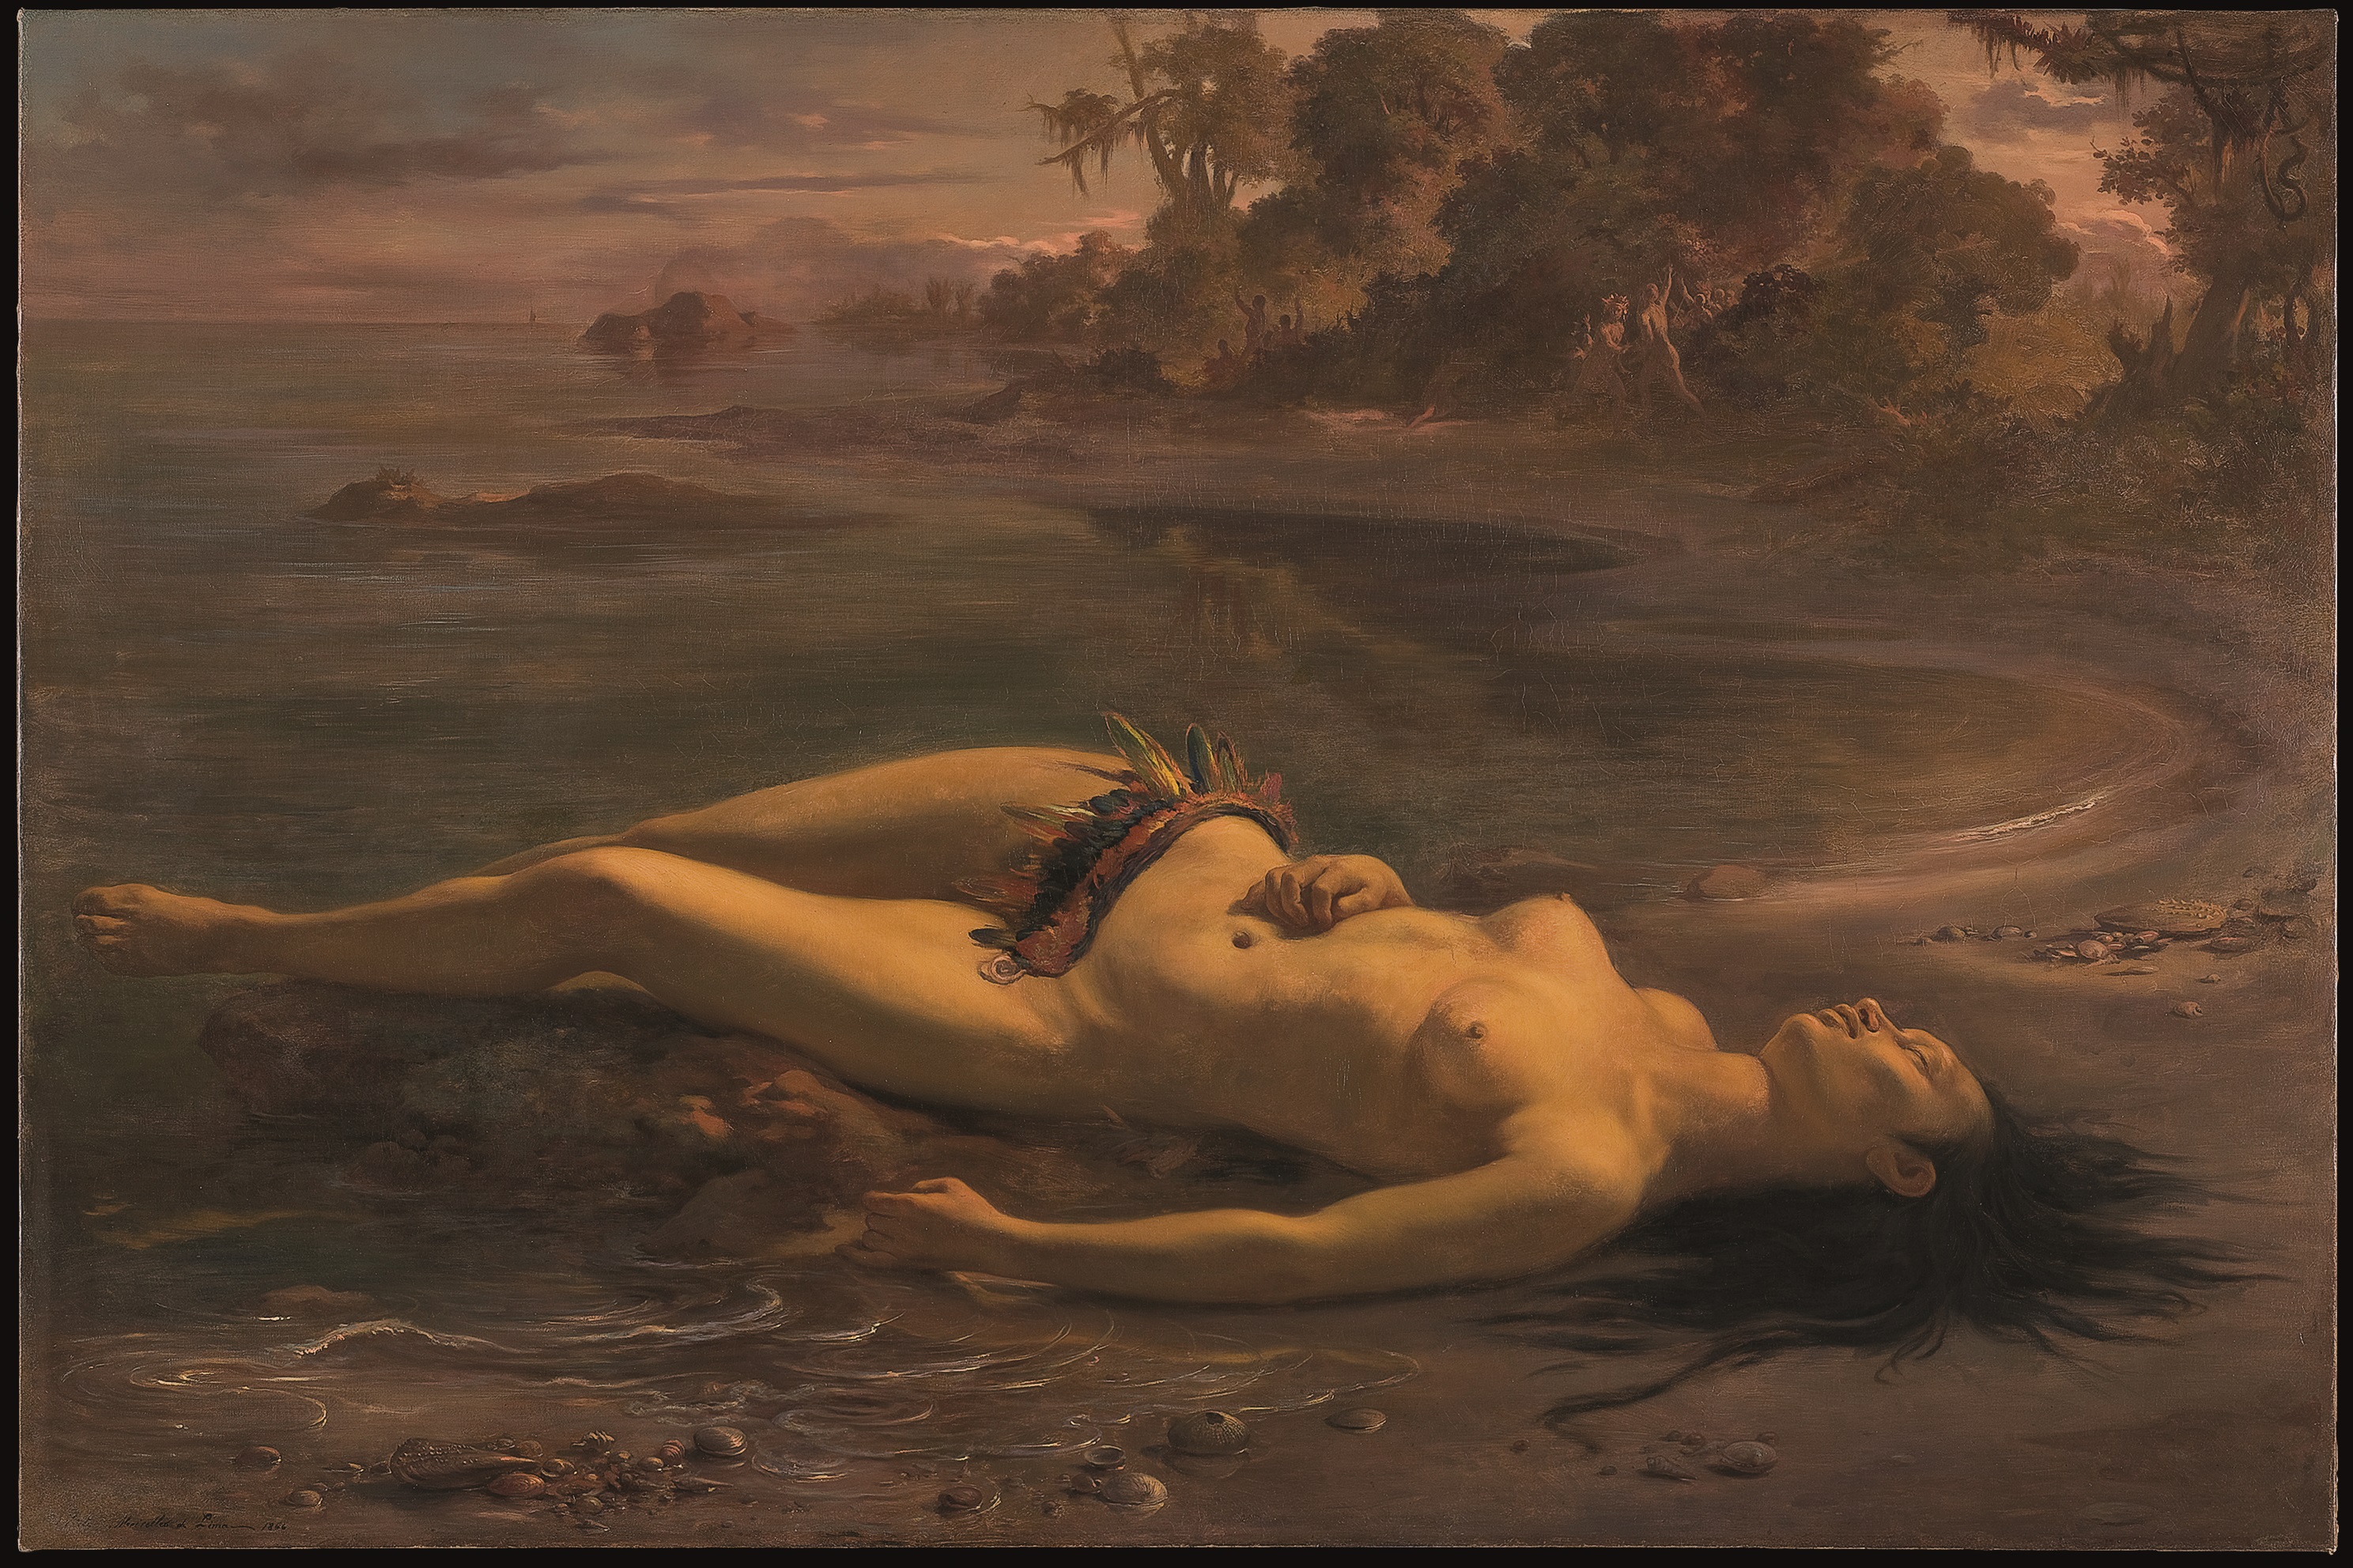 モエマ by Victor Meirelles - 1866年 - 129 x 199 cm 